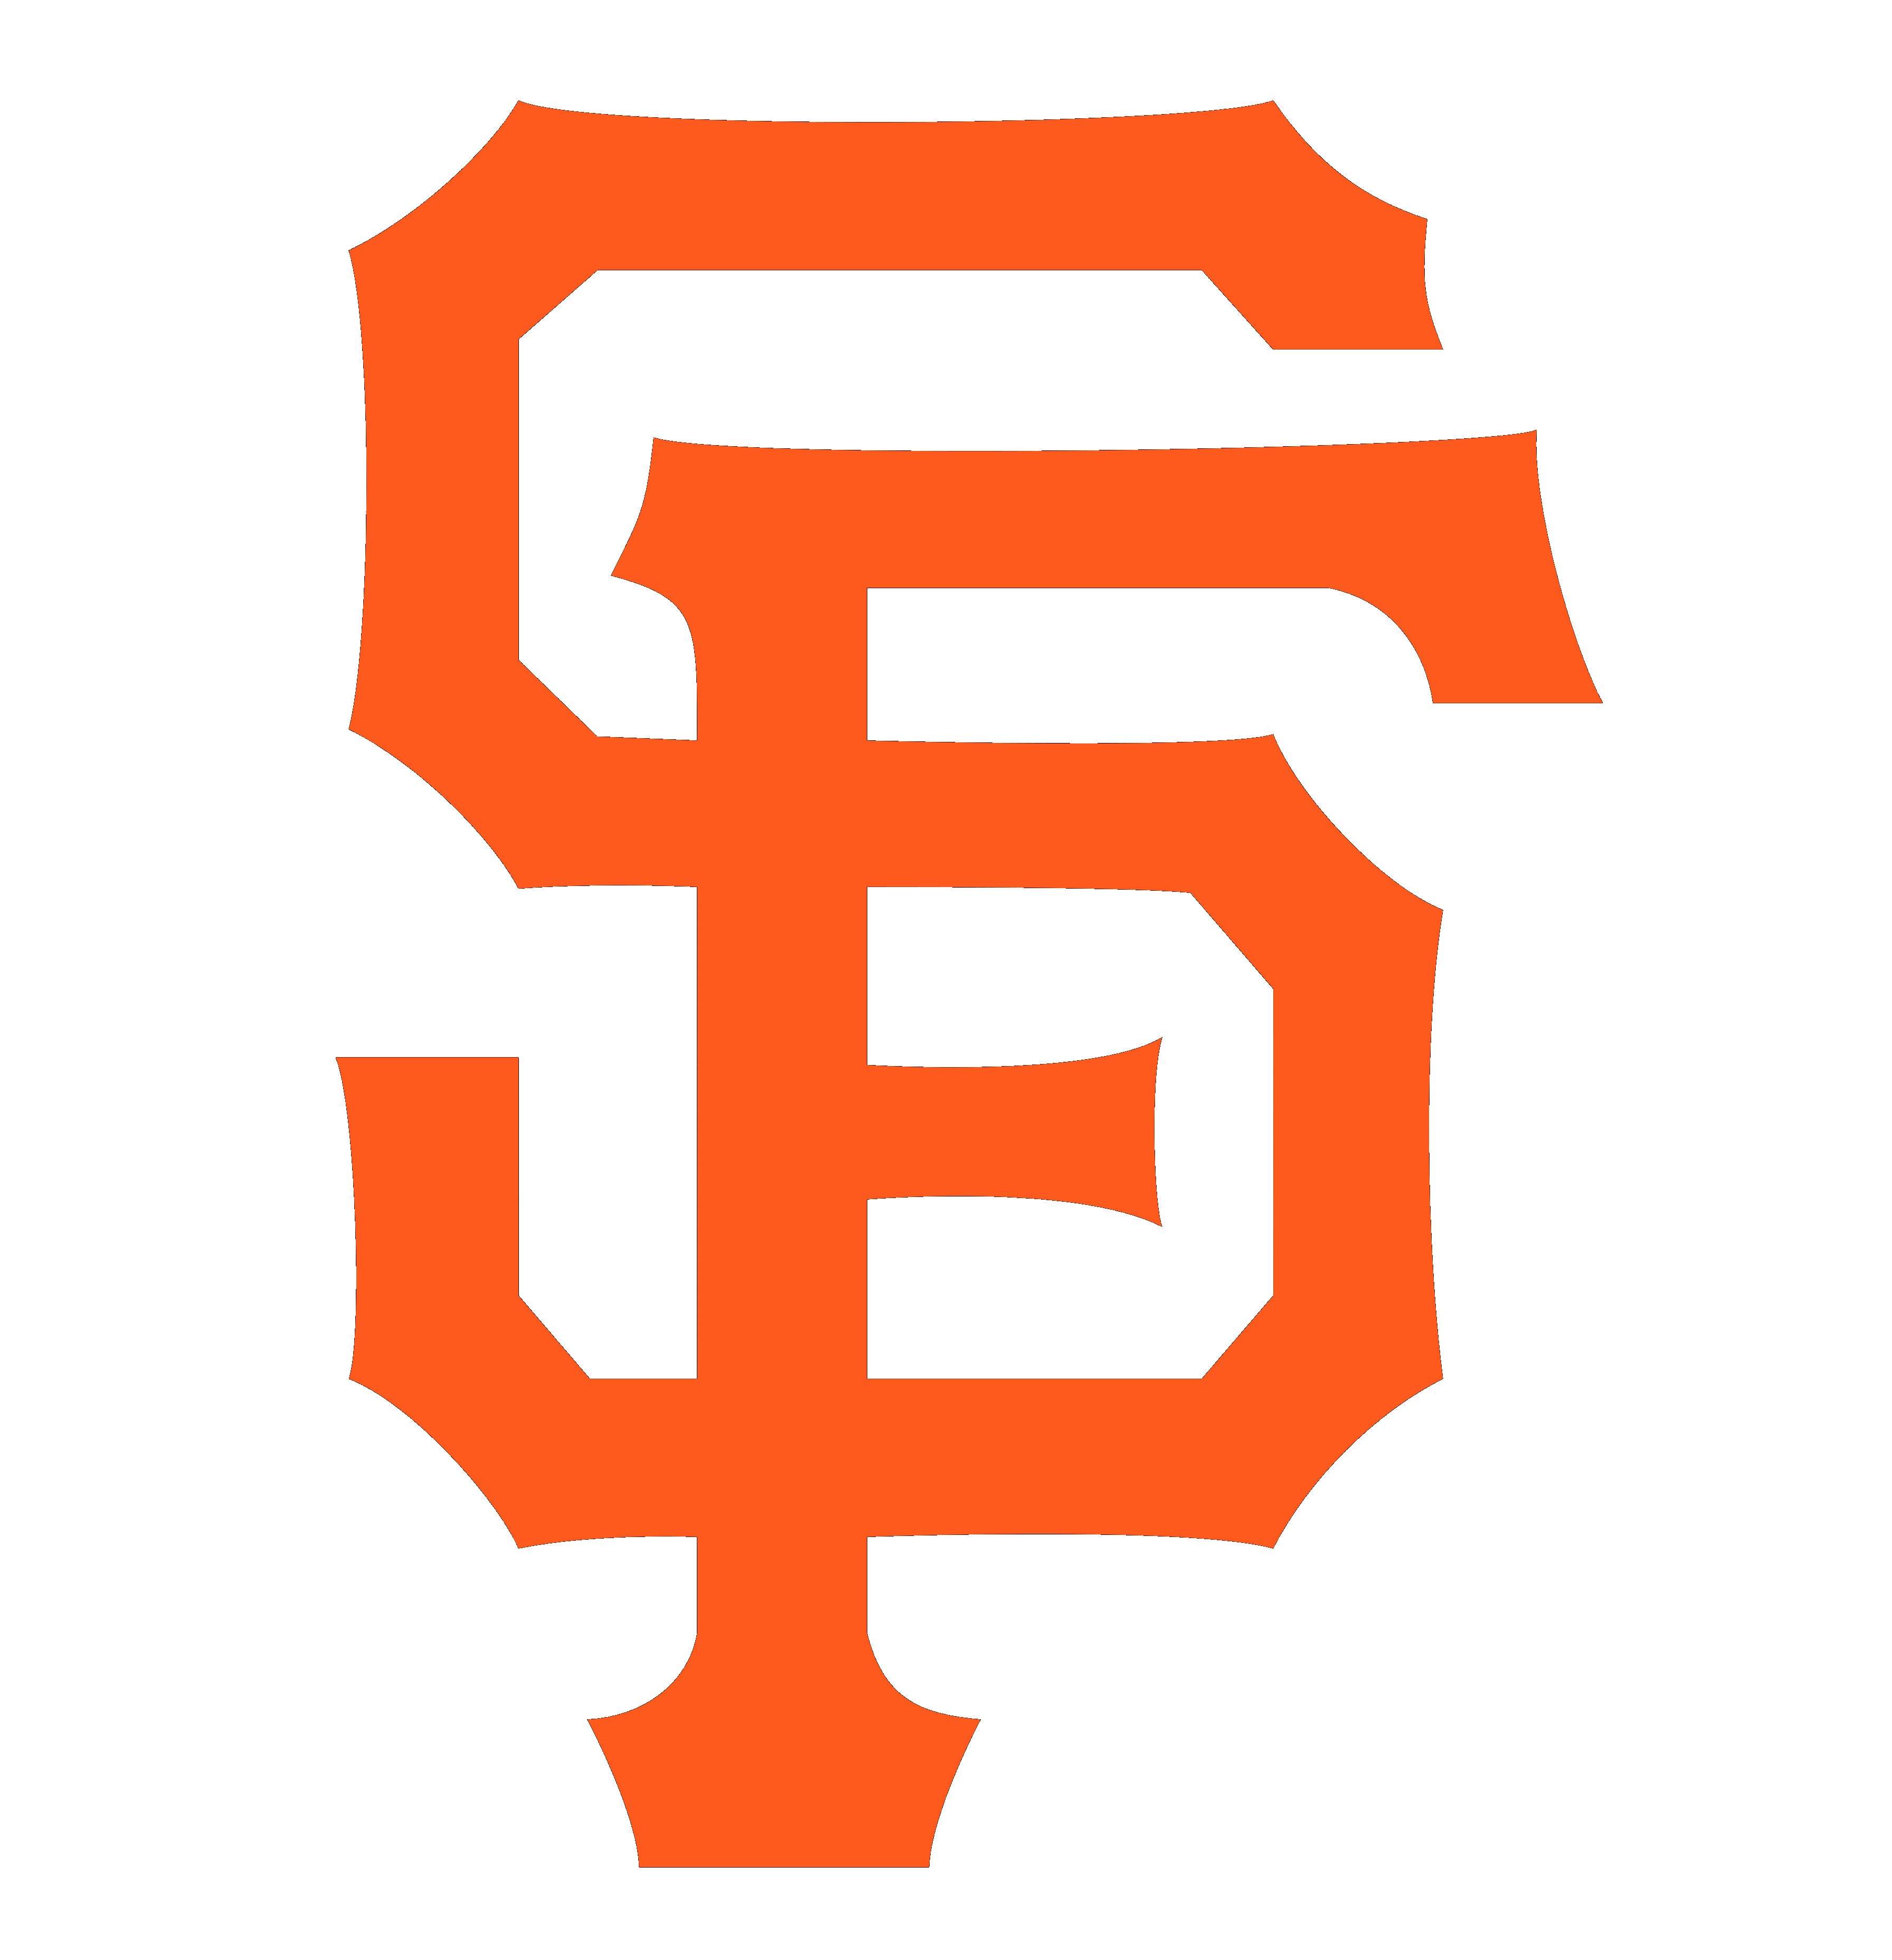 San Francisco Giants Major League Baseball Logotype 3584x3712